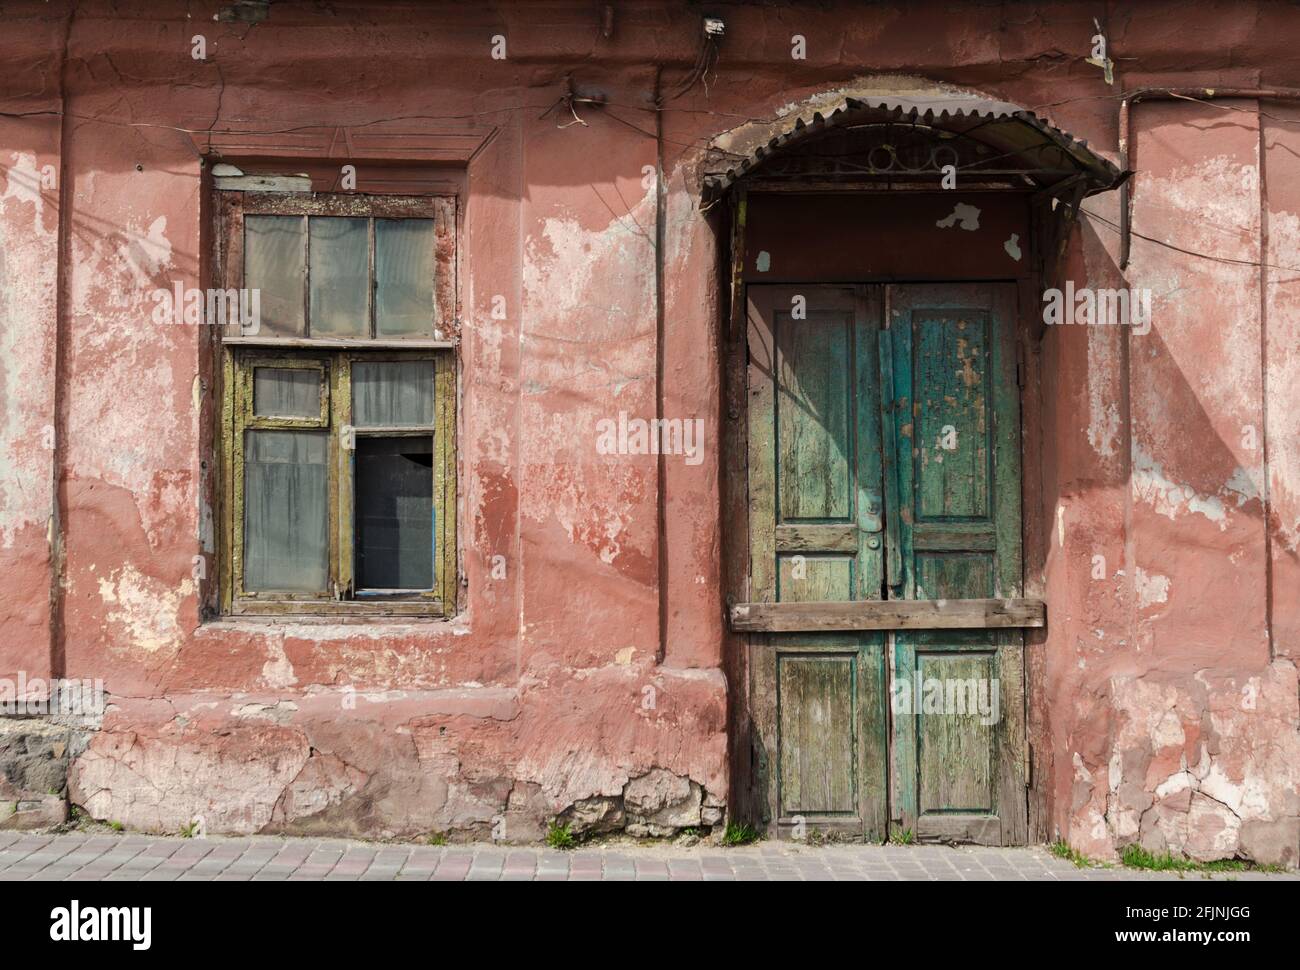 Ancienne maison abandonnée en Ukraine Donbass Donetsk guerre Banque D'Images